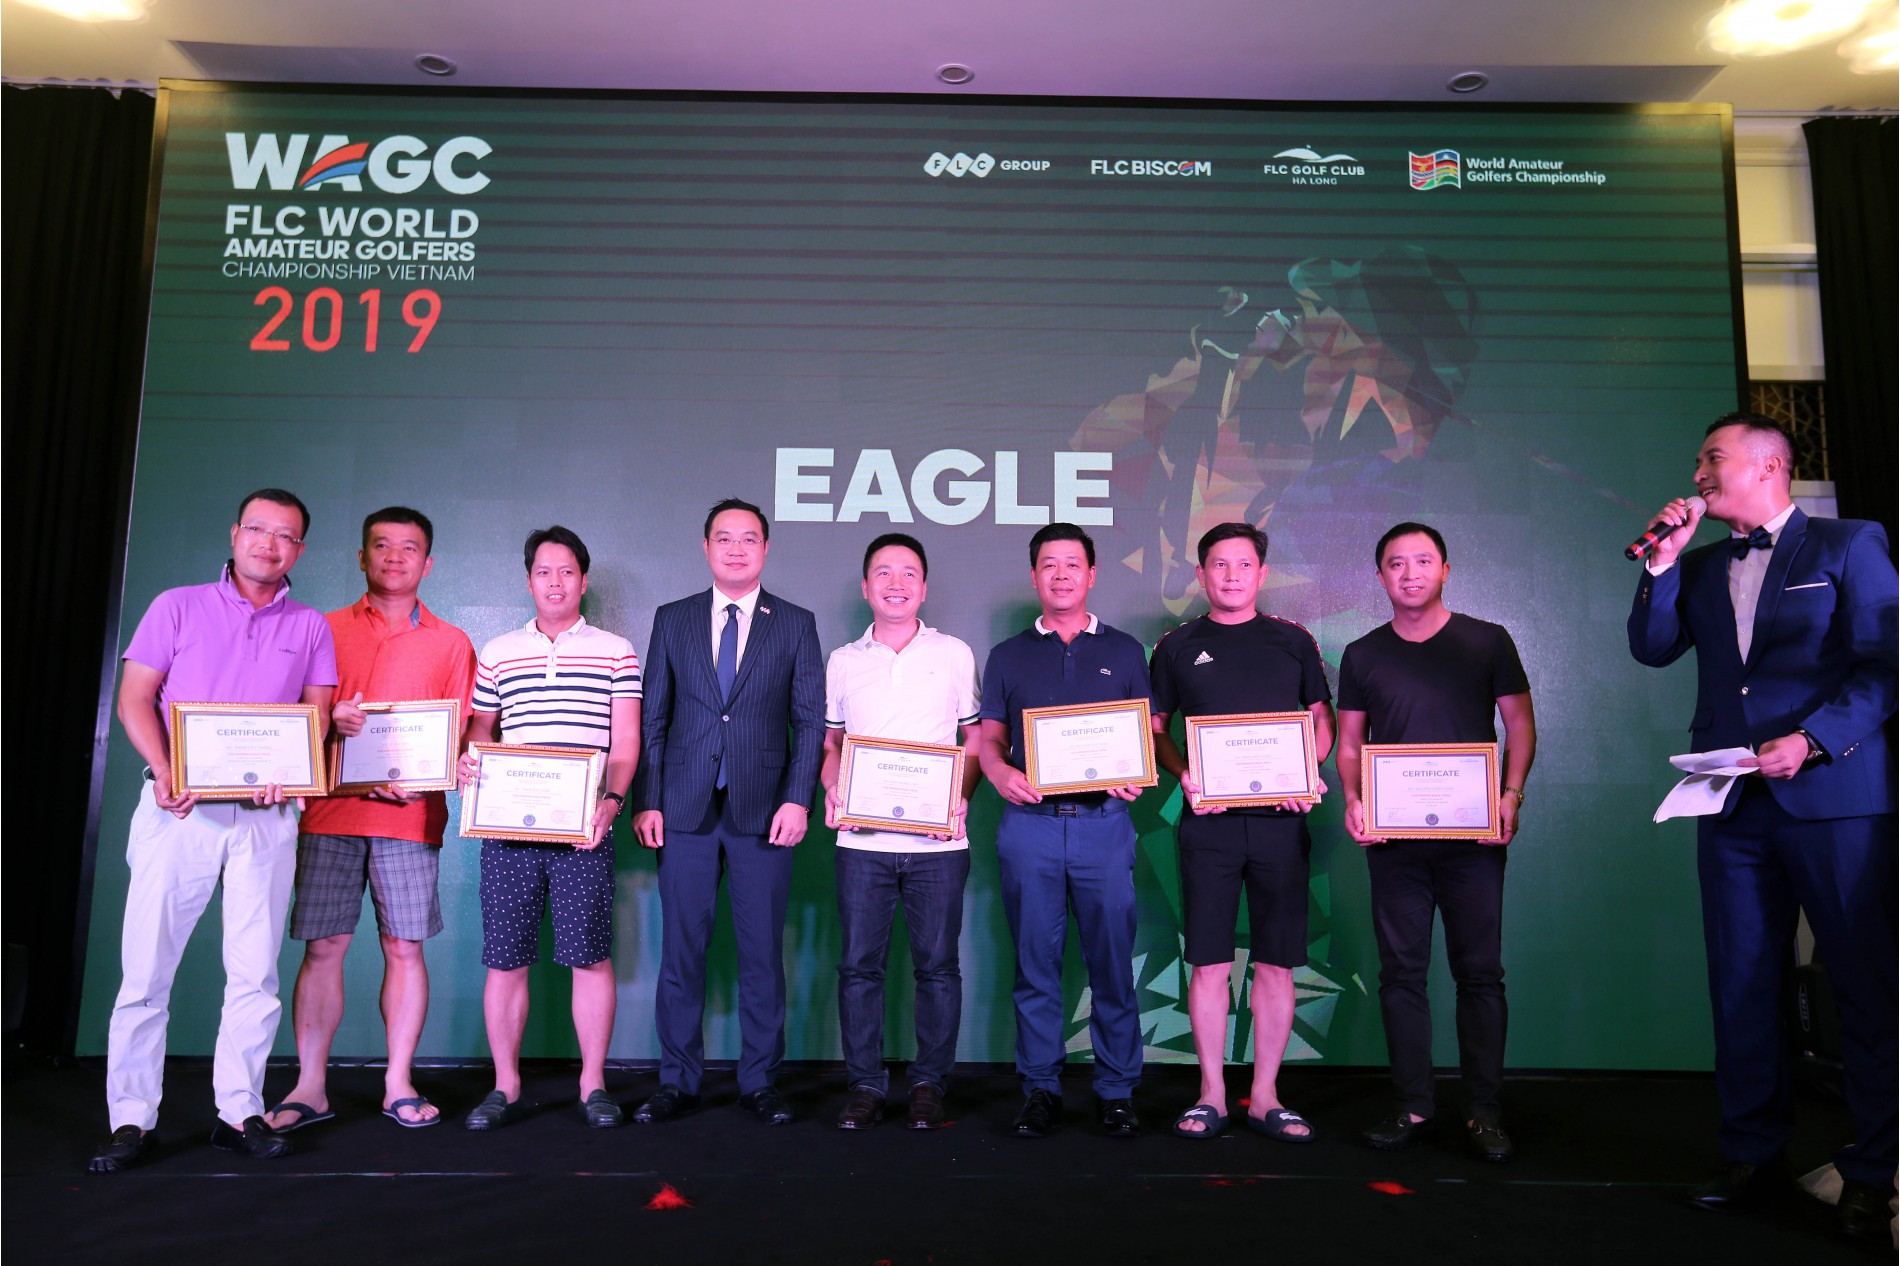 Ông Đỗ Việt Hùng – TGĐ FLC Biscom trao giải cho các golfer đạt giải Eagle